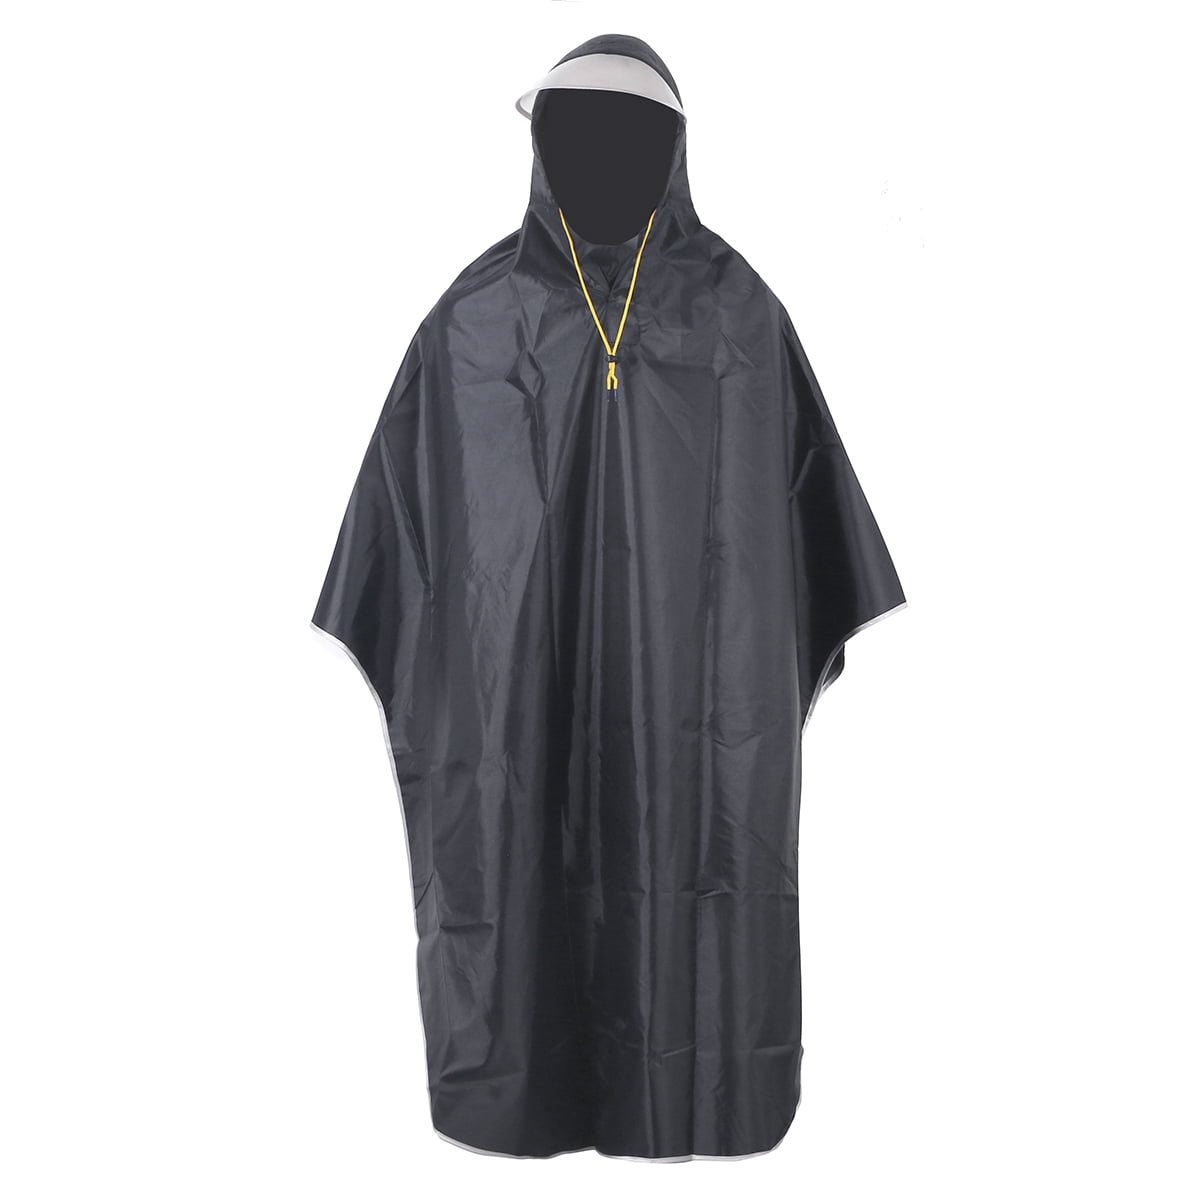 TOMSHOO Multifunctional Lightweight Waterproof Hooded Rain Poncho Raincoat D8U4